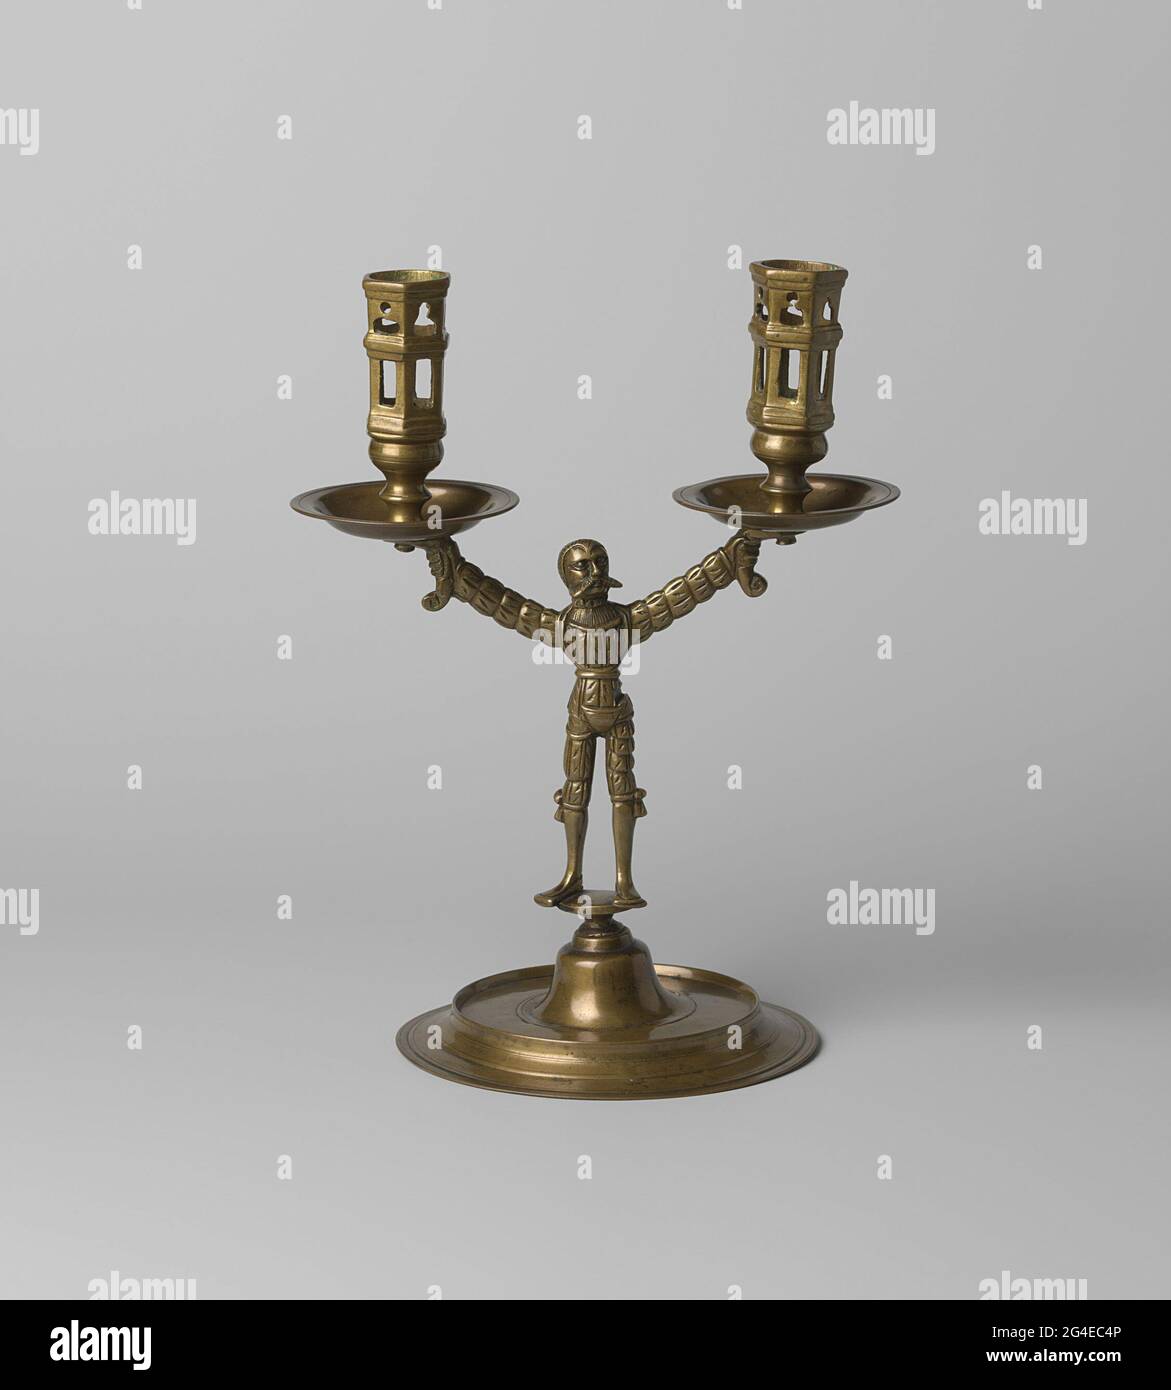 Chandelier à deux bras avec une figure d'homme de campagne. Le chandelier  se compose de quatre parties: Le pied, la figure masculine, deux gros  porteurs, deux chandeliers. Les attrape-pieds et les graisses